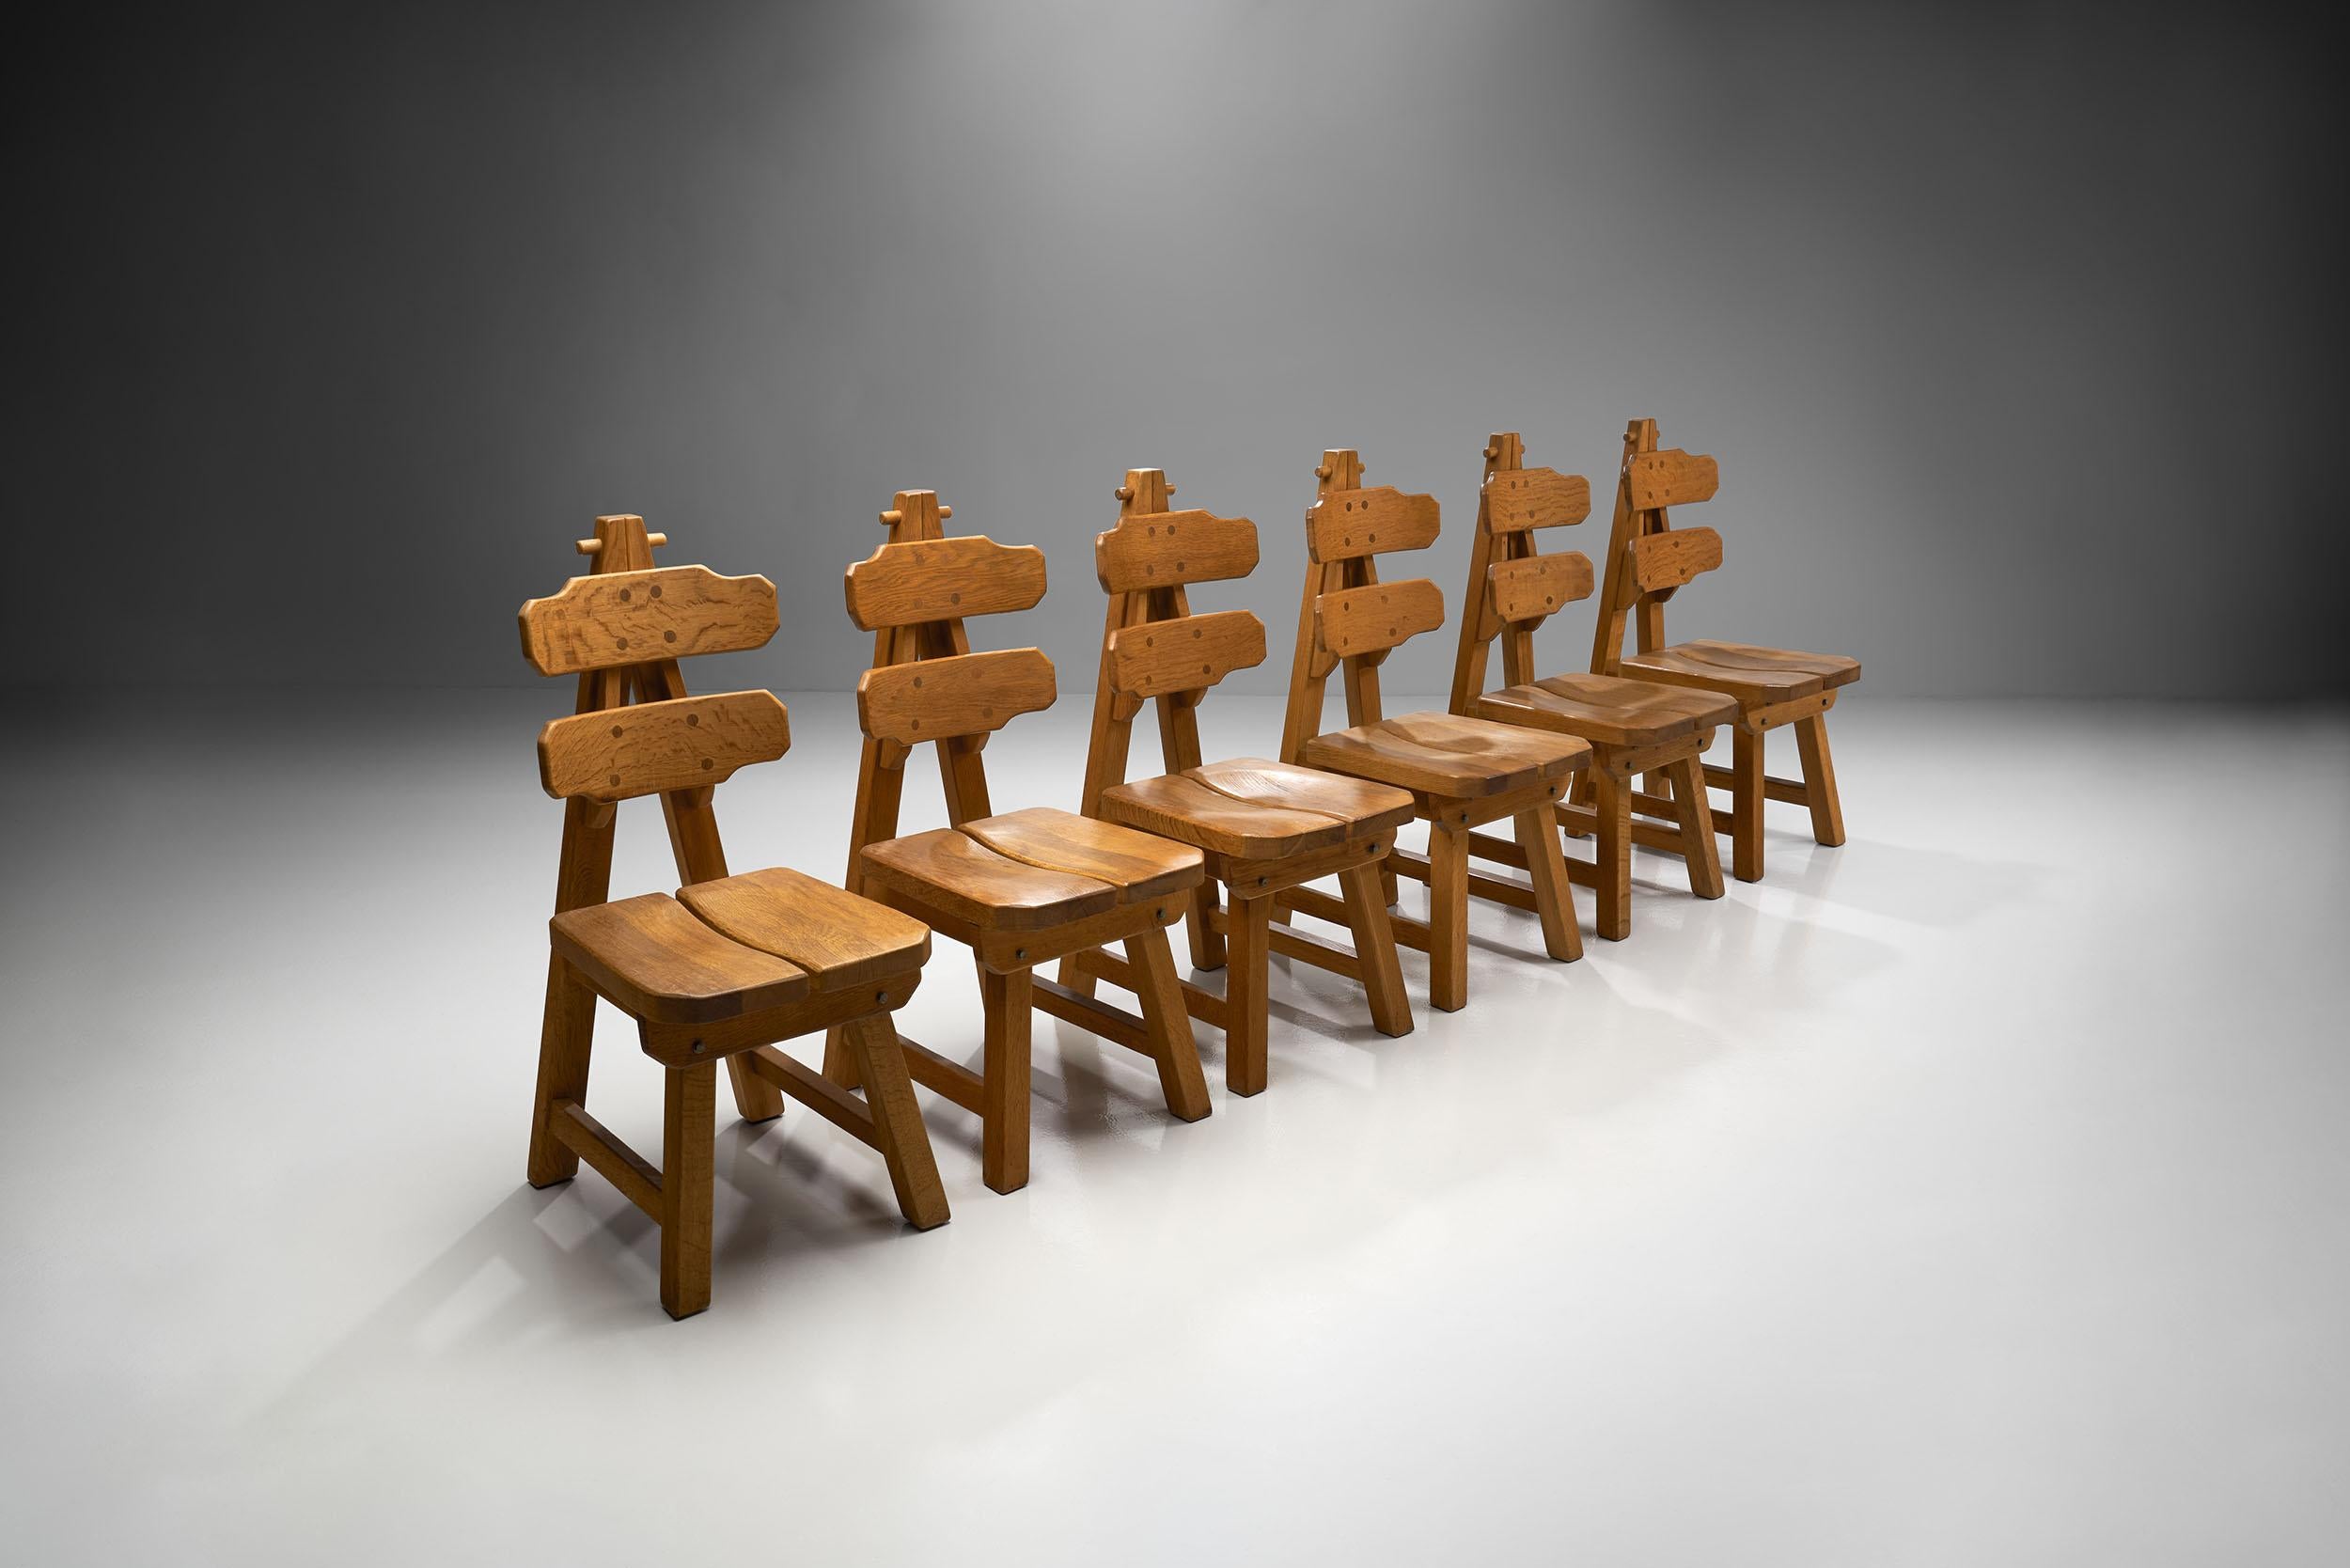 Impressionnant ensemble de six chaises brutalistes en chêne, Espagne, vers 1970. Cet ensemble comprend six chaises brutalistes aux formes géométriques et sculpturales exquises. Les marques du Brutalisme peuvent être observées dans le bois massif non